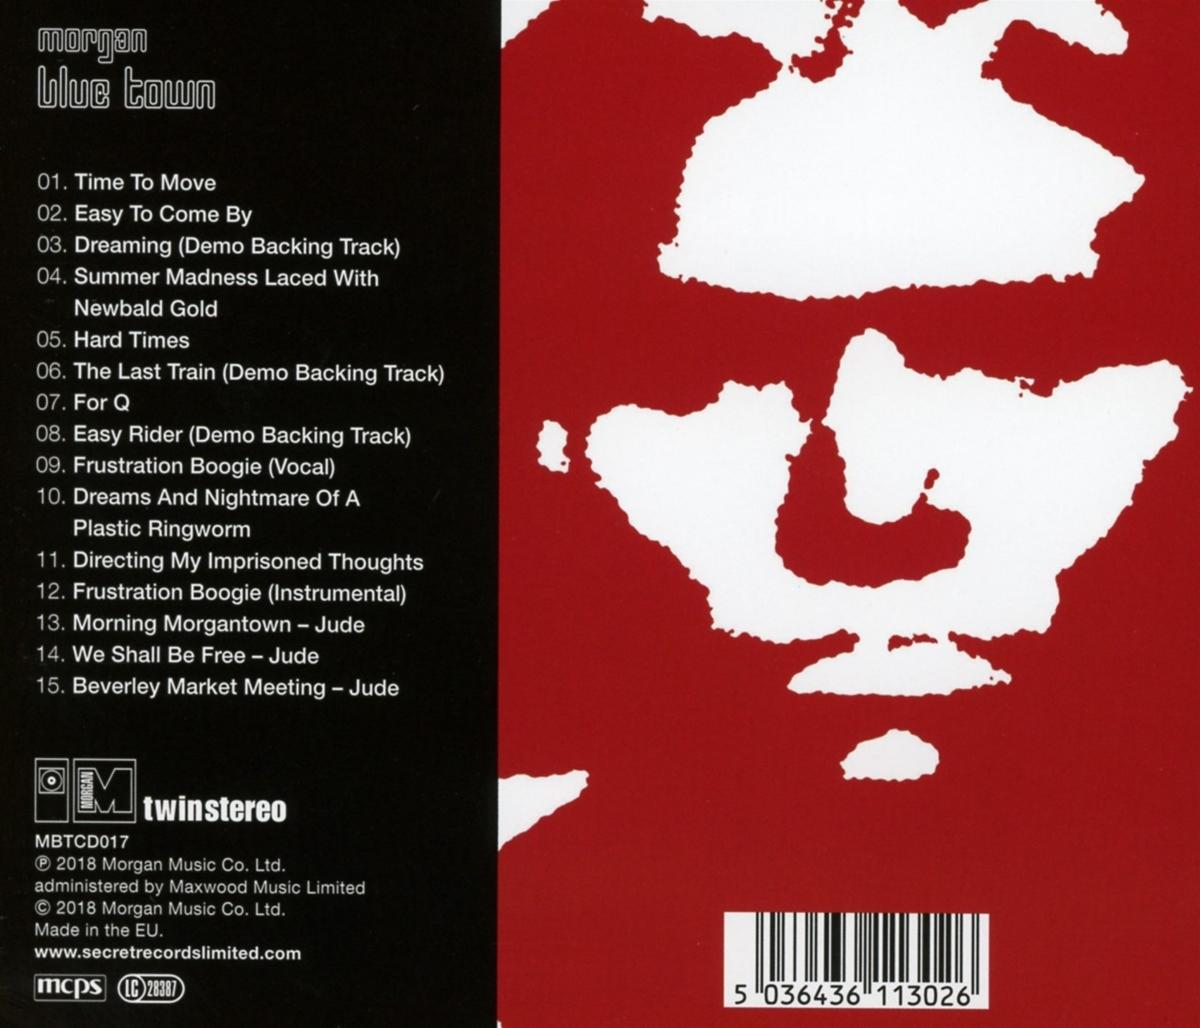 II Dirt Red - (CD) Red - Dirt